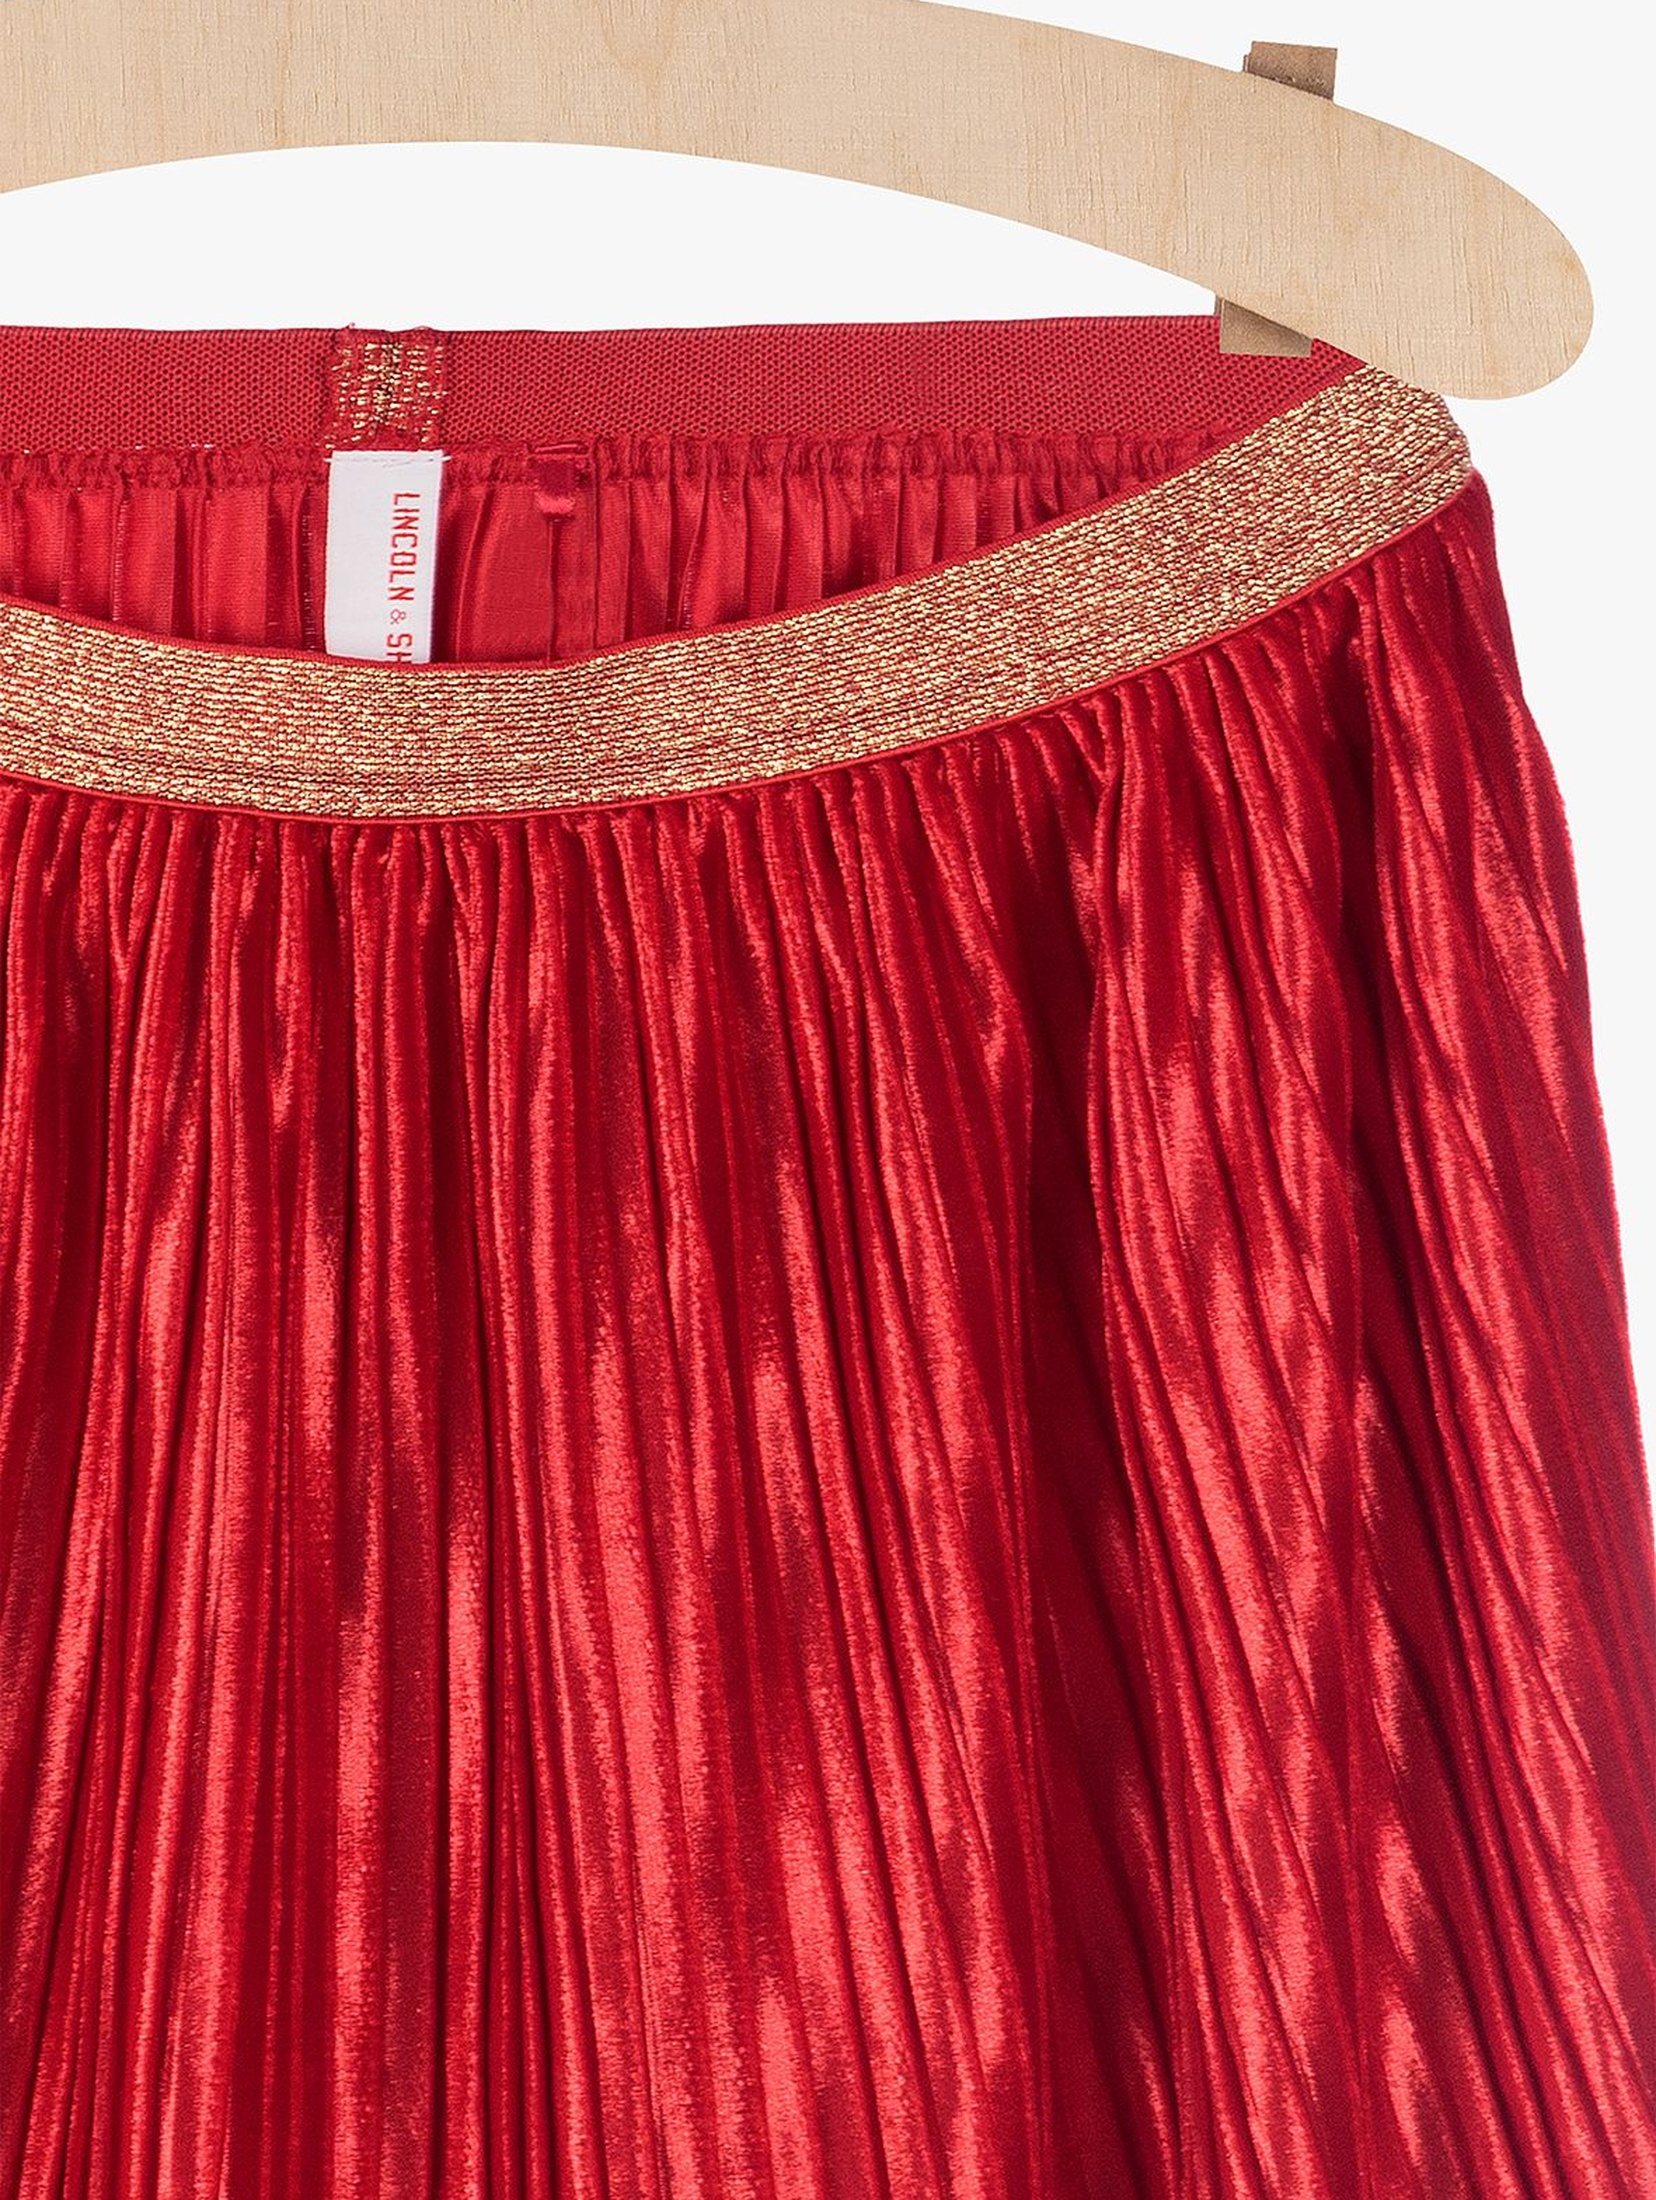 Spódnica plisowana- czerwona